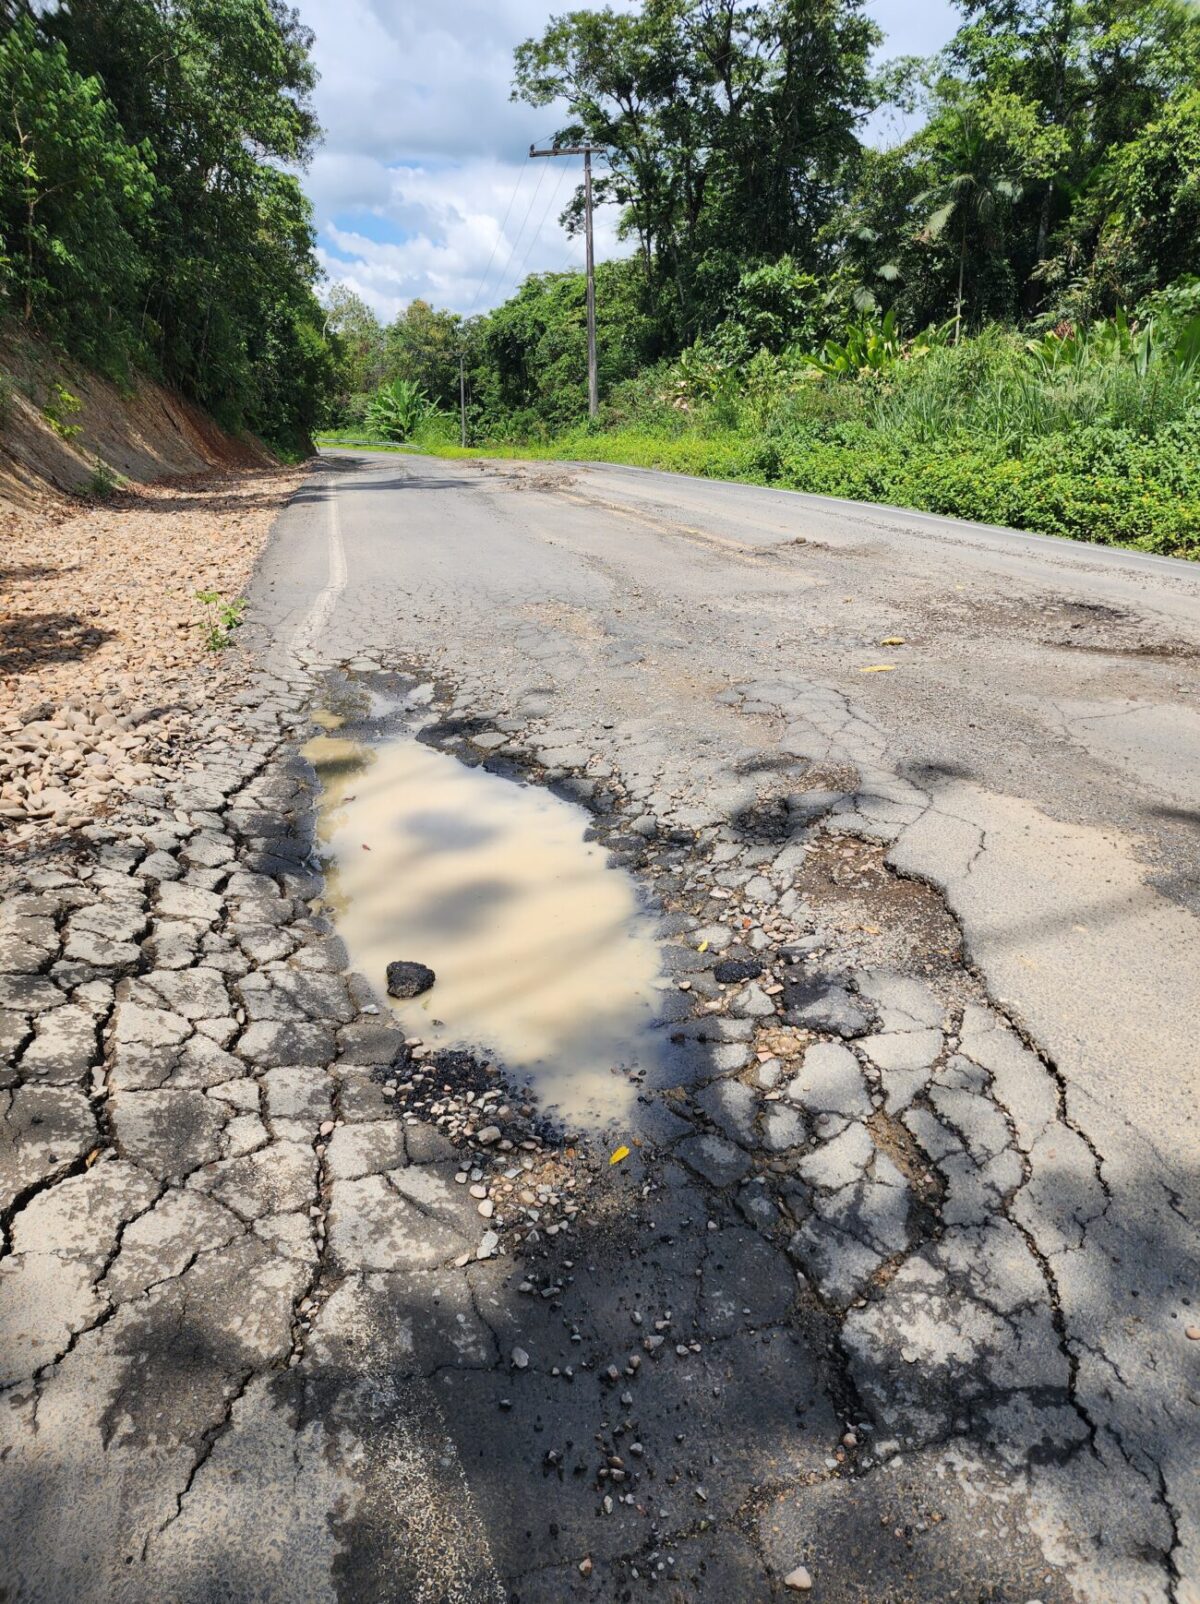 Buracos no asfalto do entorno da Barragem colocam em risco usuários da via